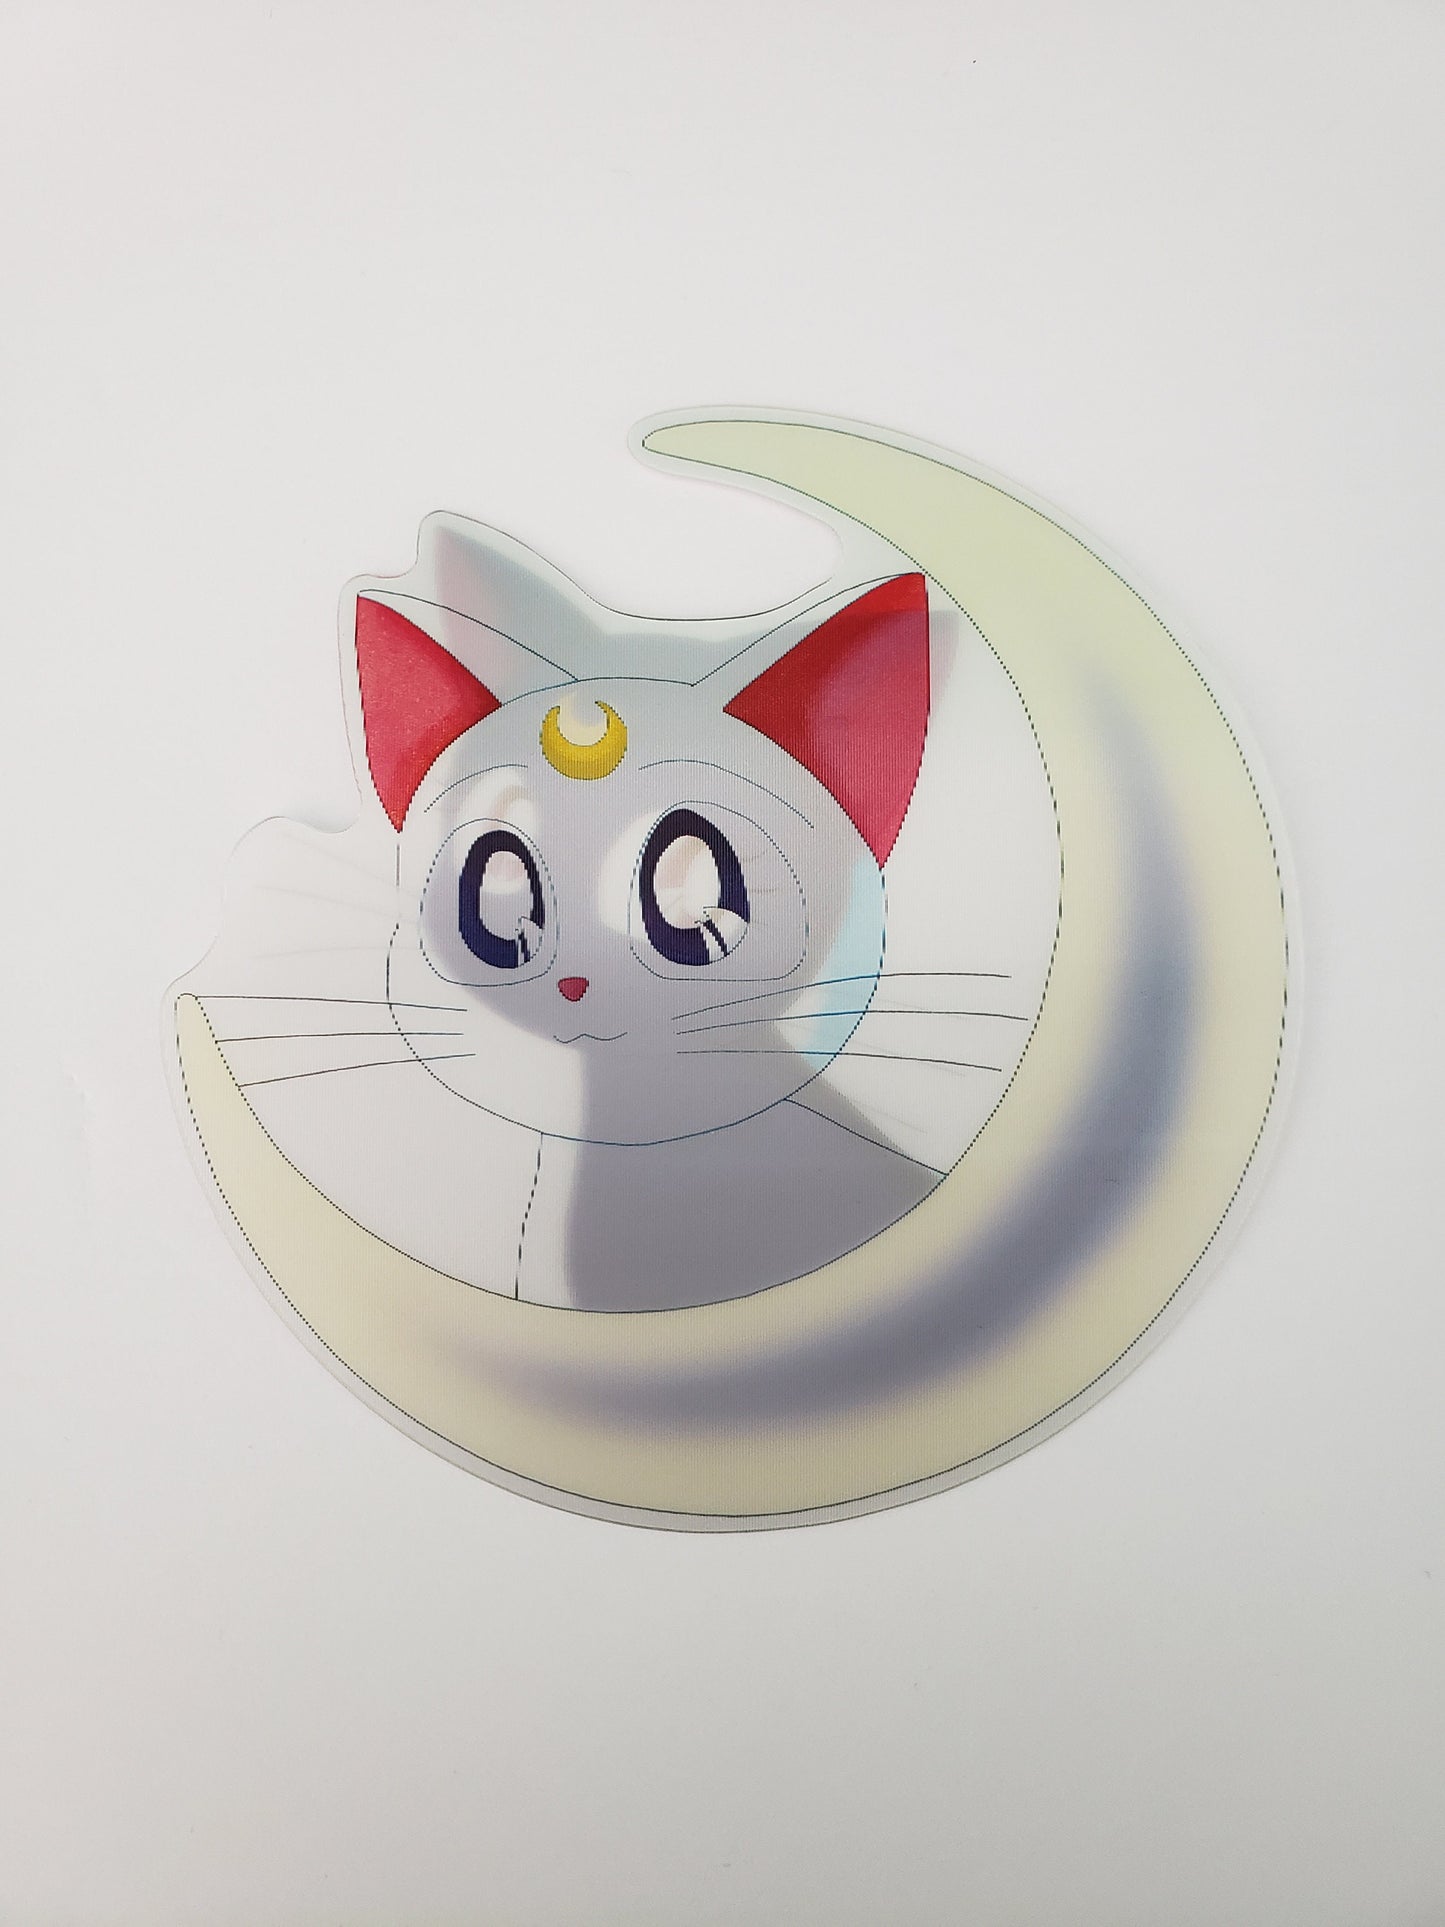 Moon Loving Cats, Peeker Sticker, 3D Lenticular Car Sticker, Motion Sticker, Anime Sticker, Kawaii Sticker